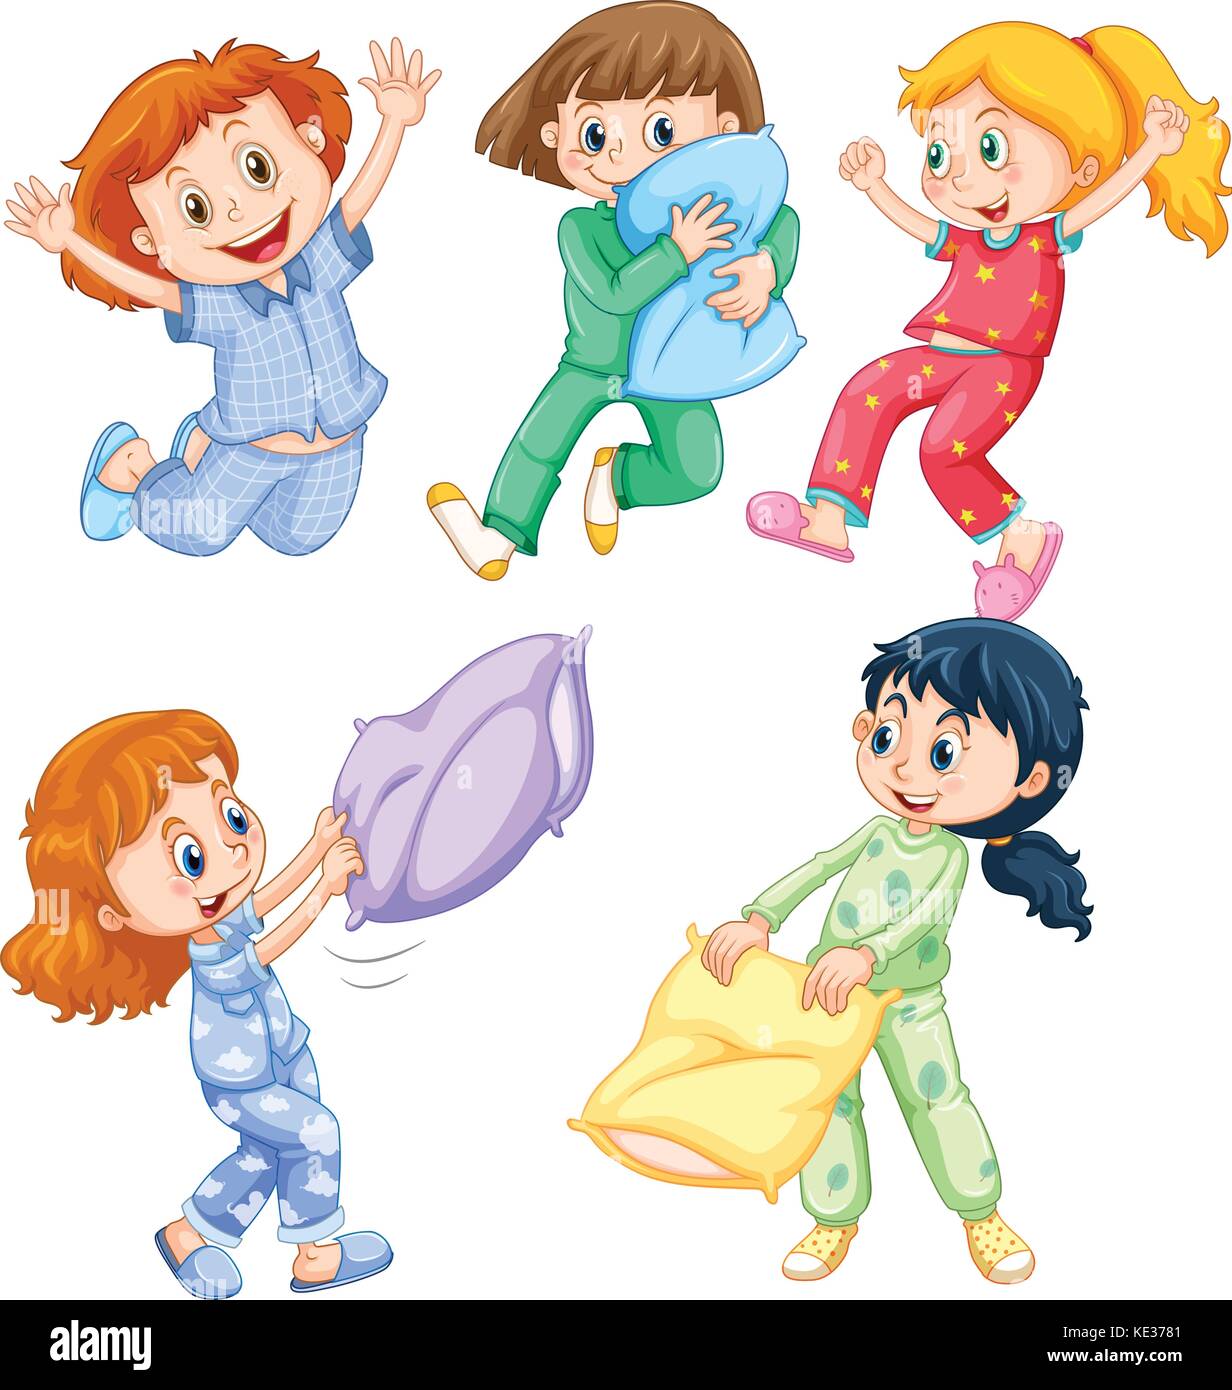 pajama party cartoon clipart